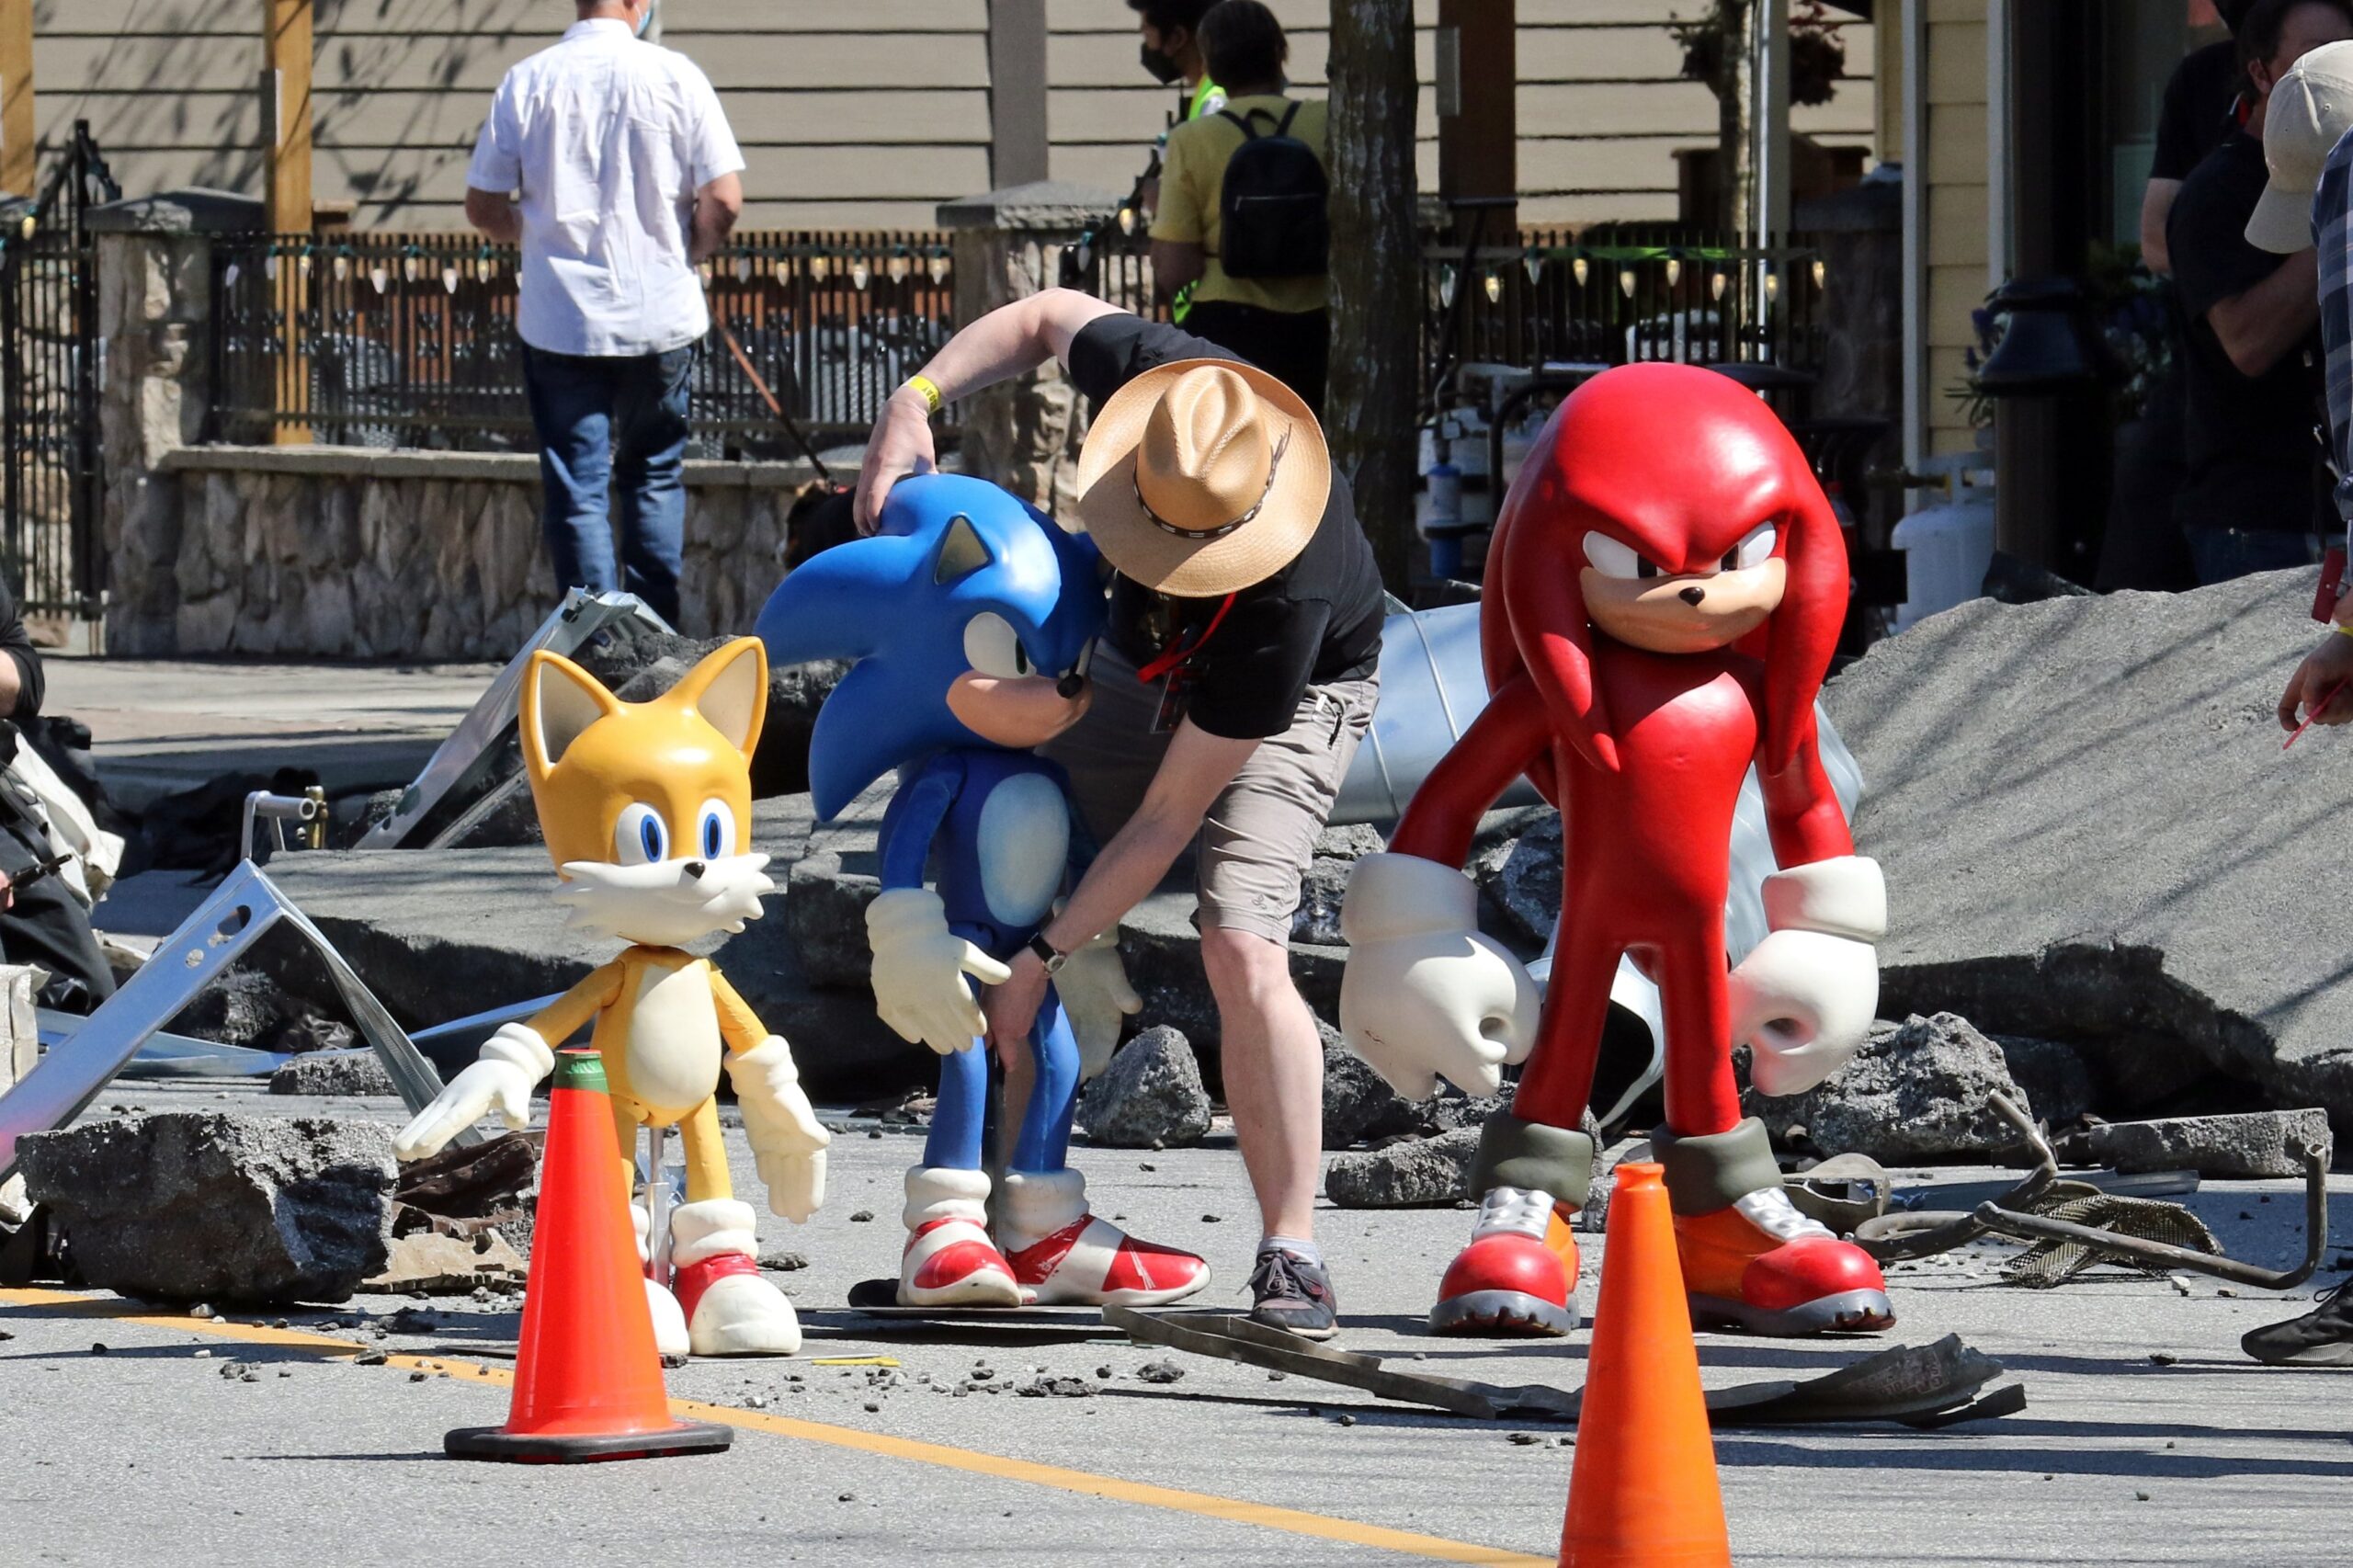 Sonic 2 ganha vídeo incrível com bastidores e cenas inéditas